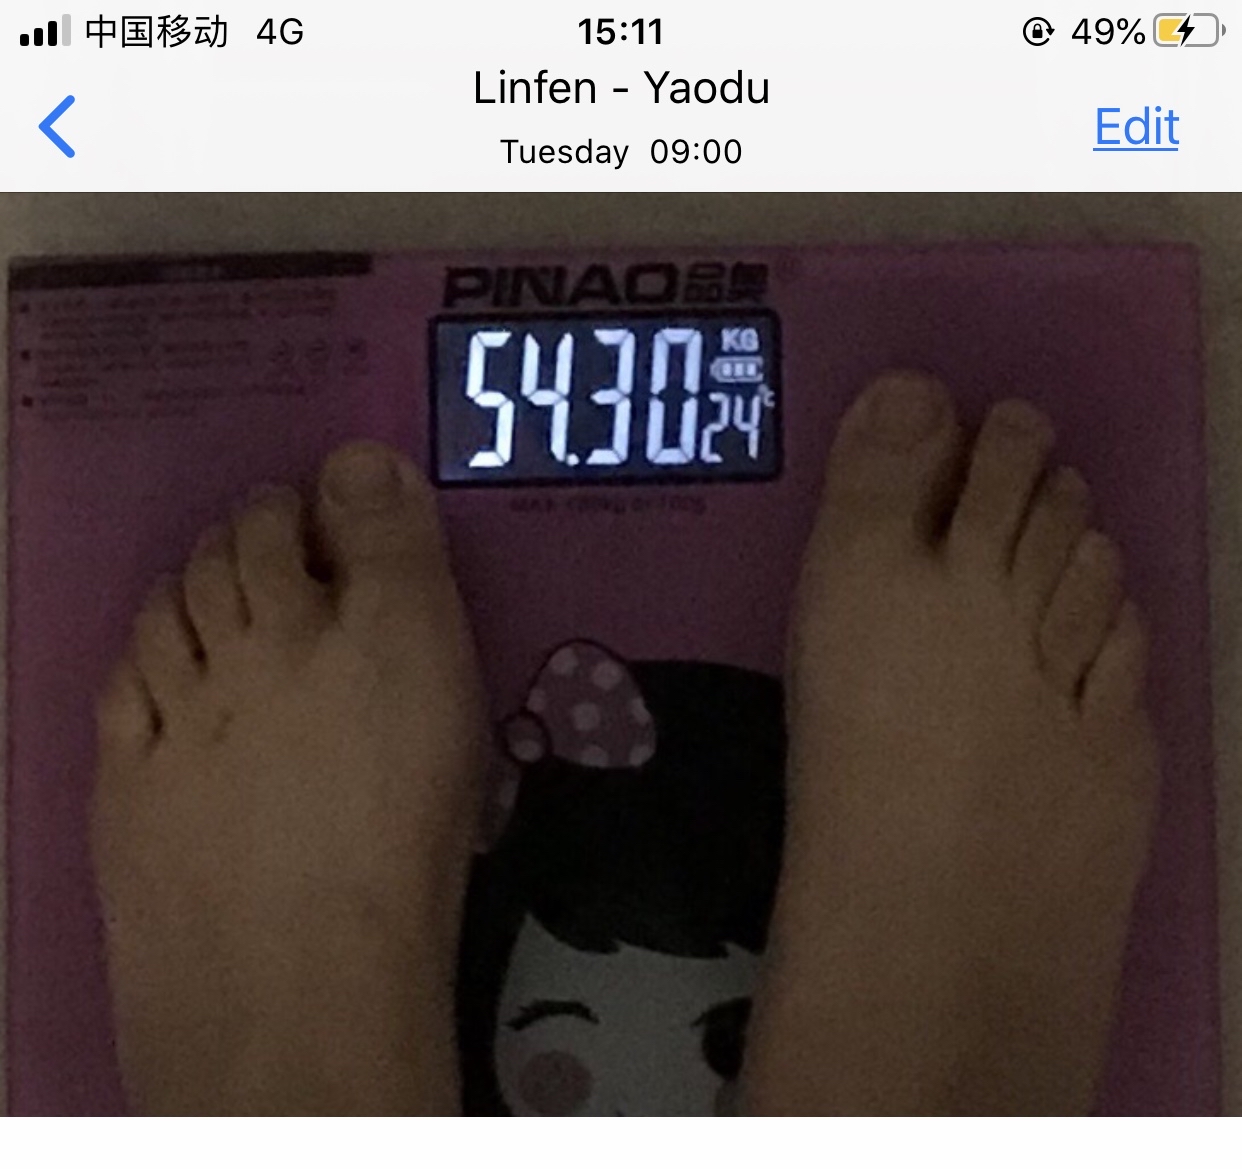 好多人问我体重变化,基本上就是这样,110卡了半个月多,54公斤也卡了足